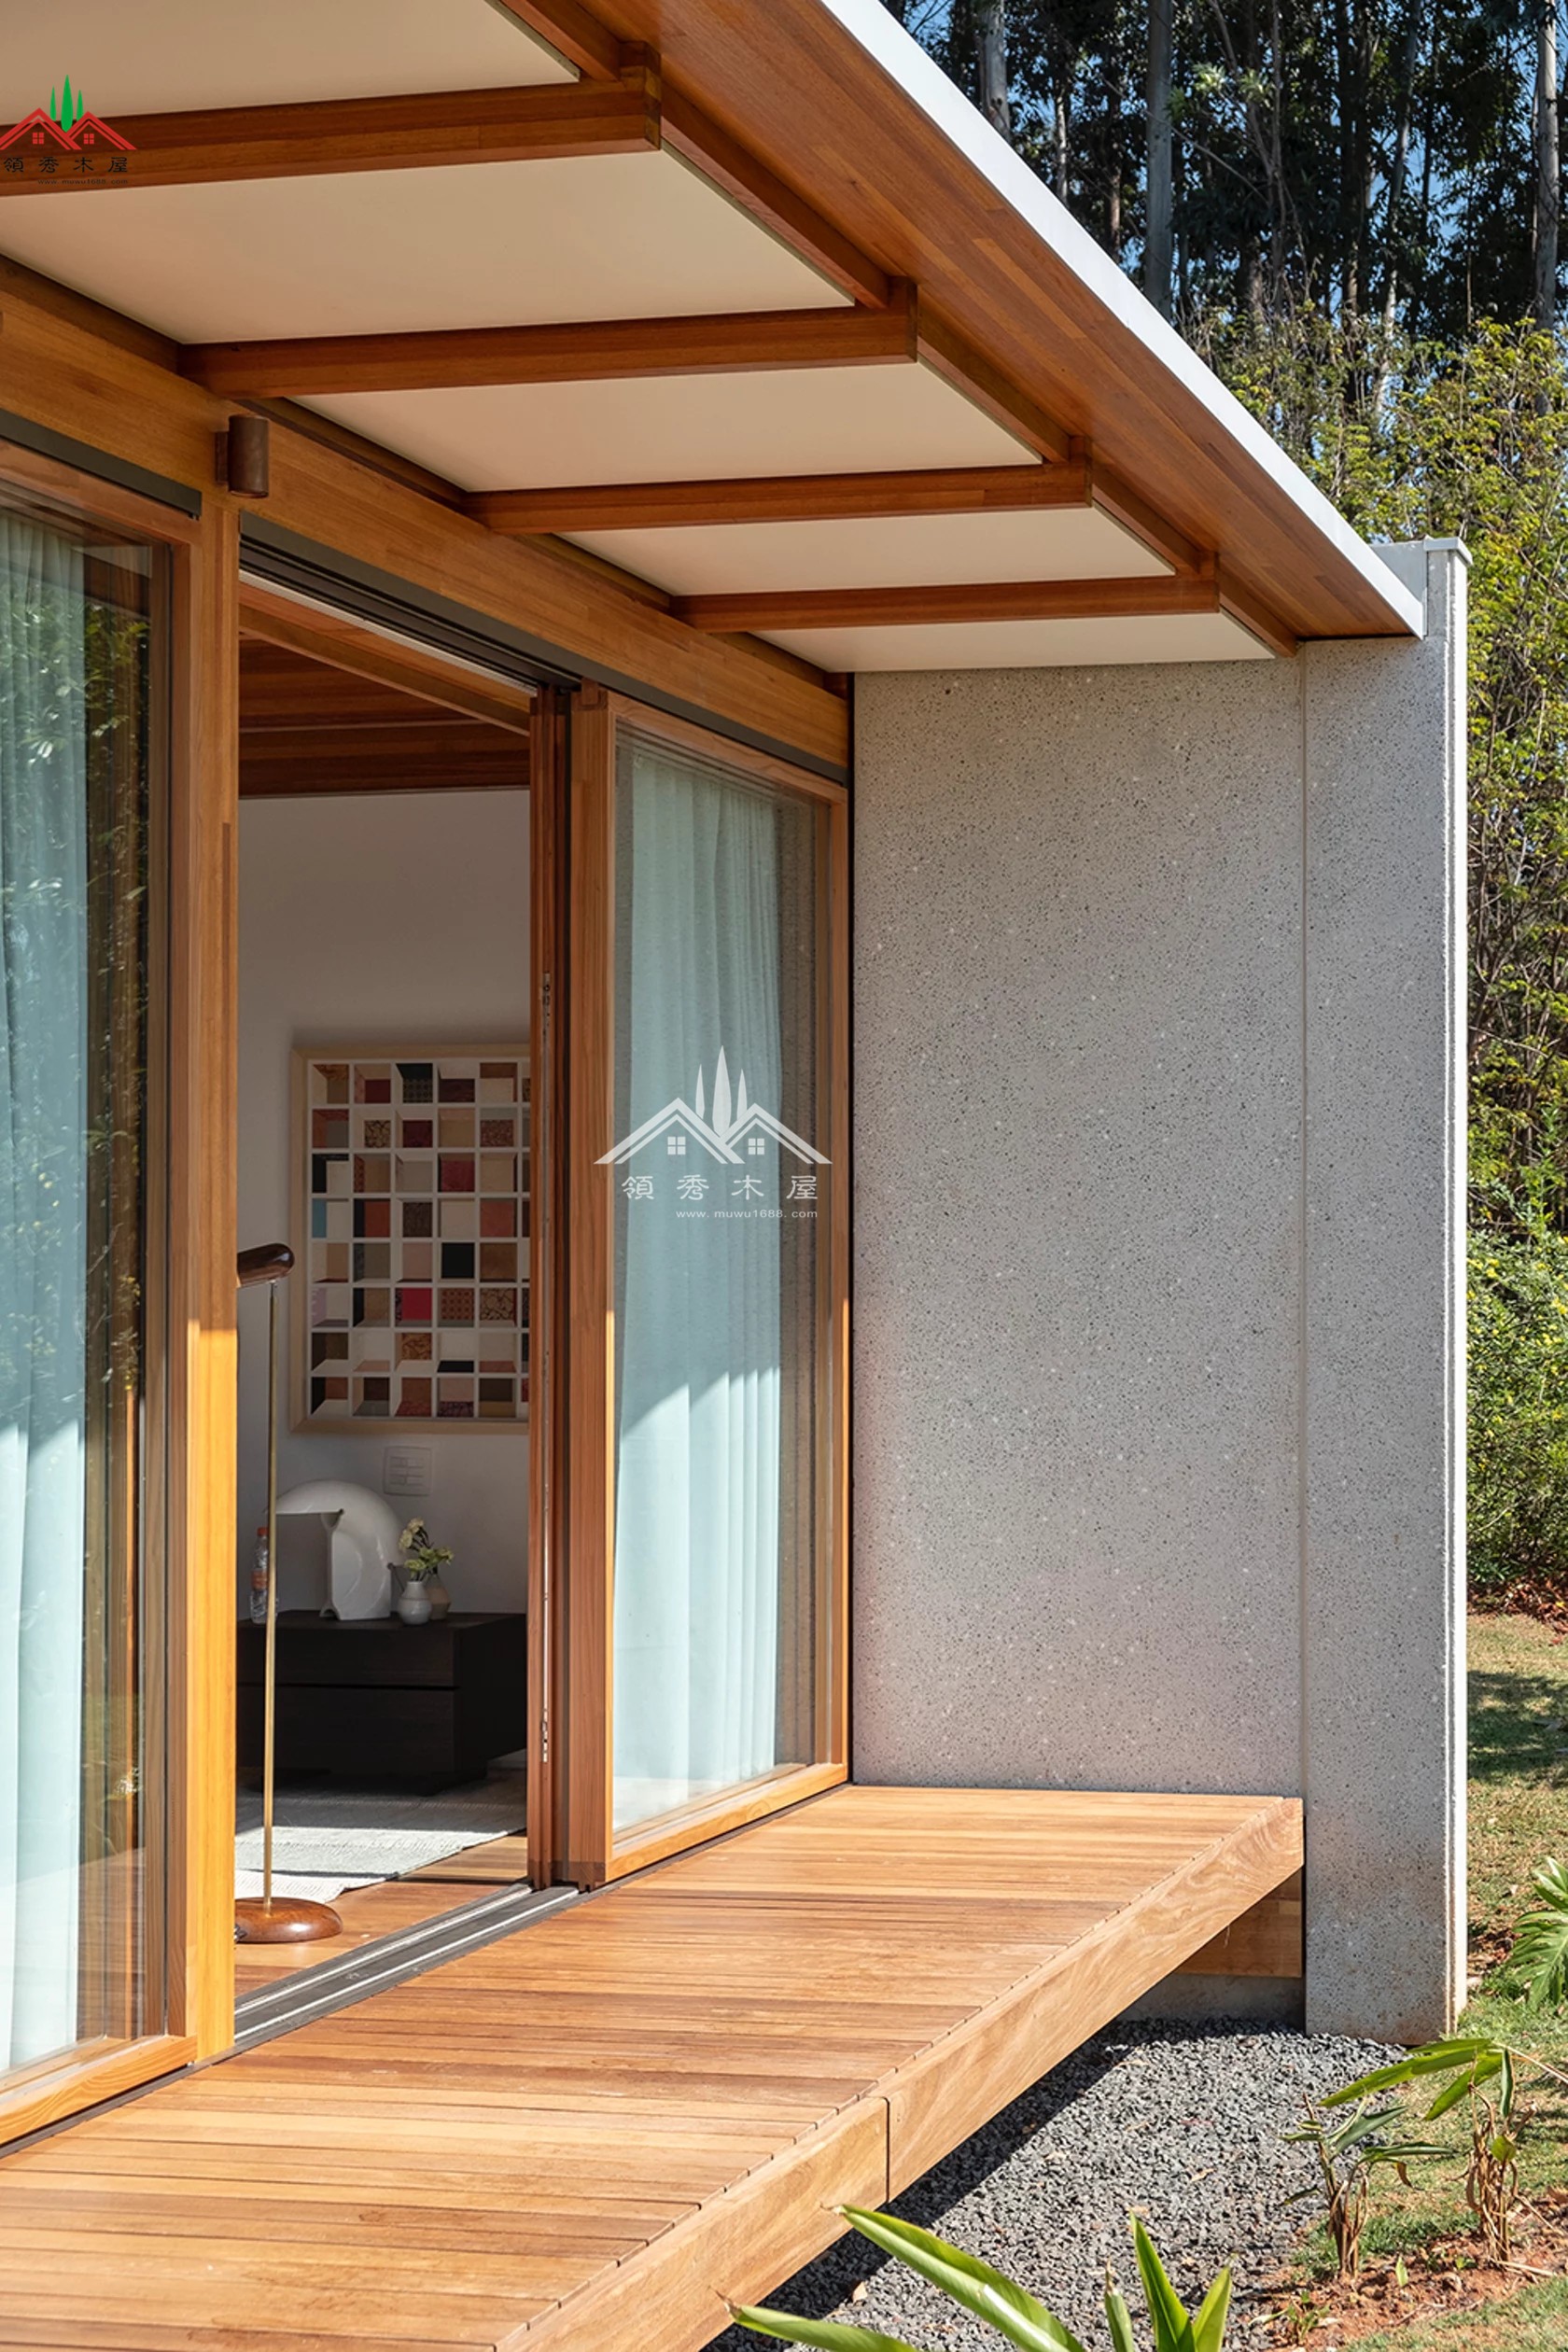 水泥与木头结合单层平顶现代风格大落地窗度假小木屋